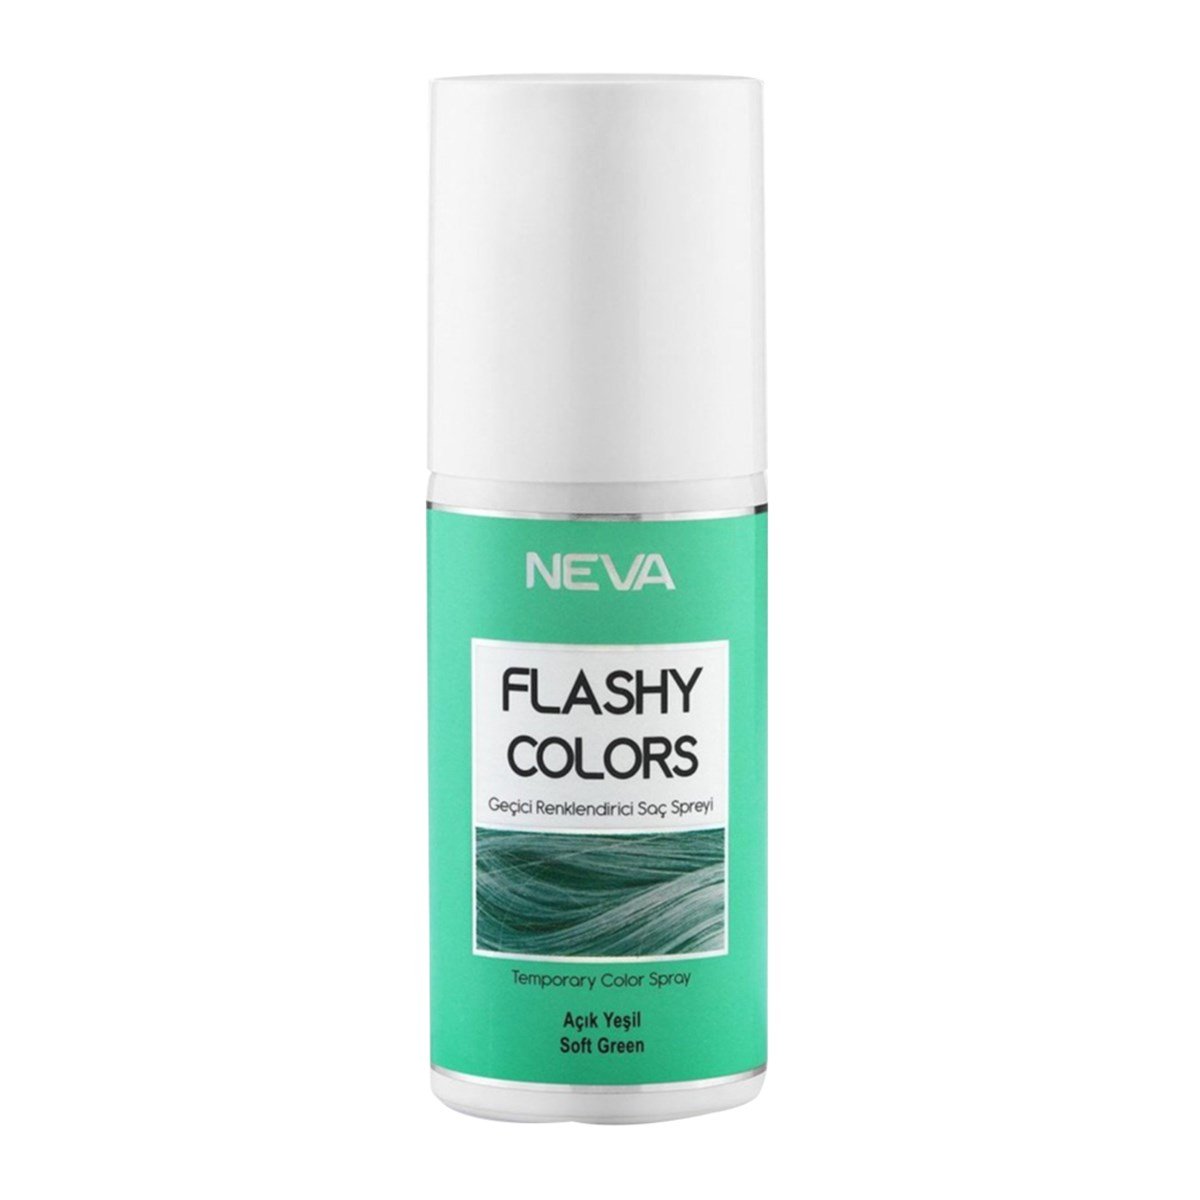 Nevacolor Flashy Colors Geçici Renklendirici Saç Spreyi Açık Yeşil 75ml -  Platin